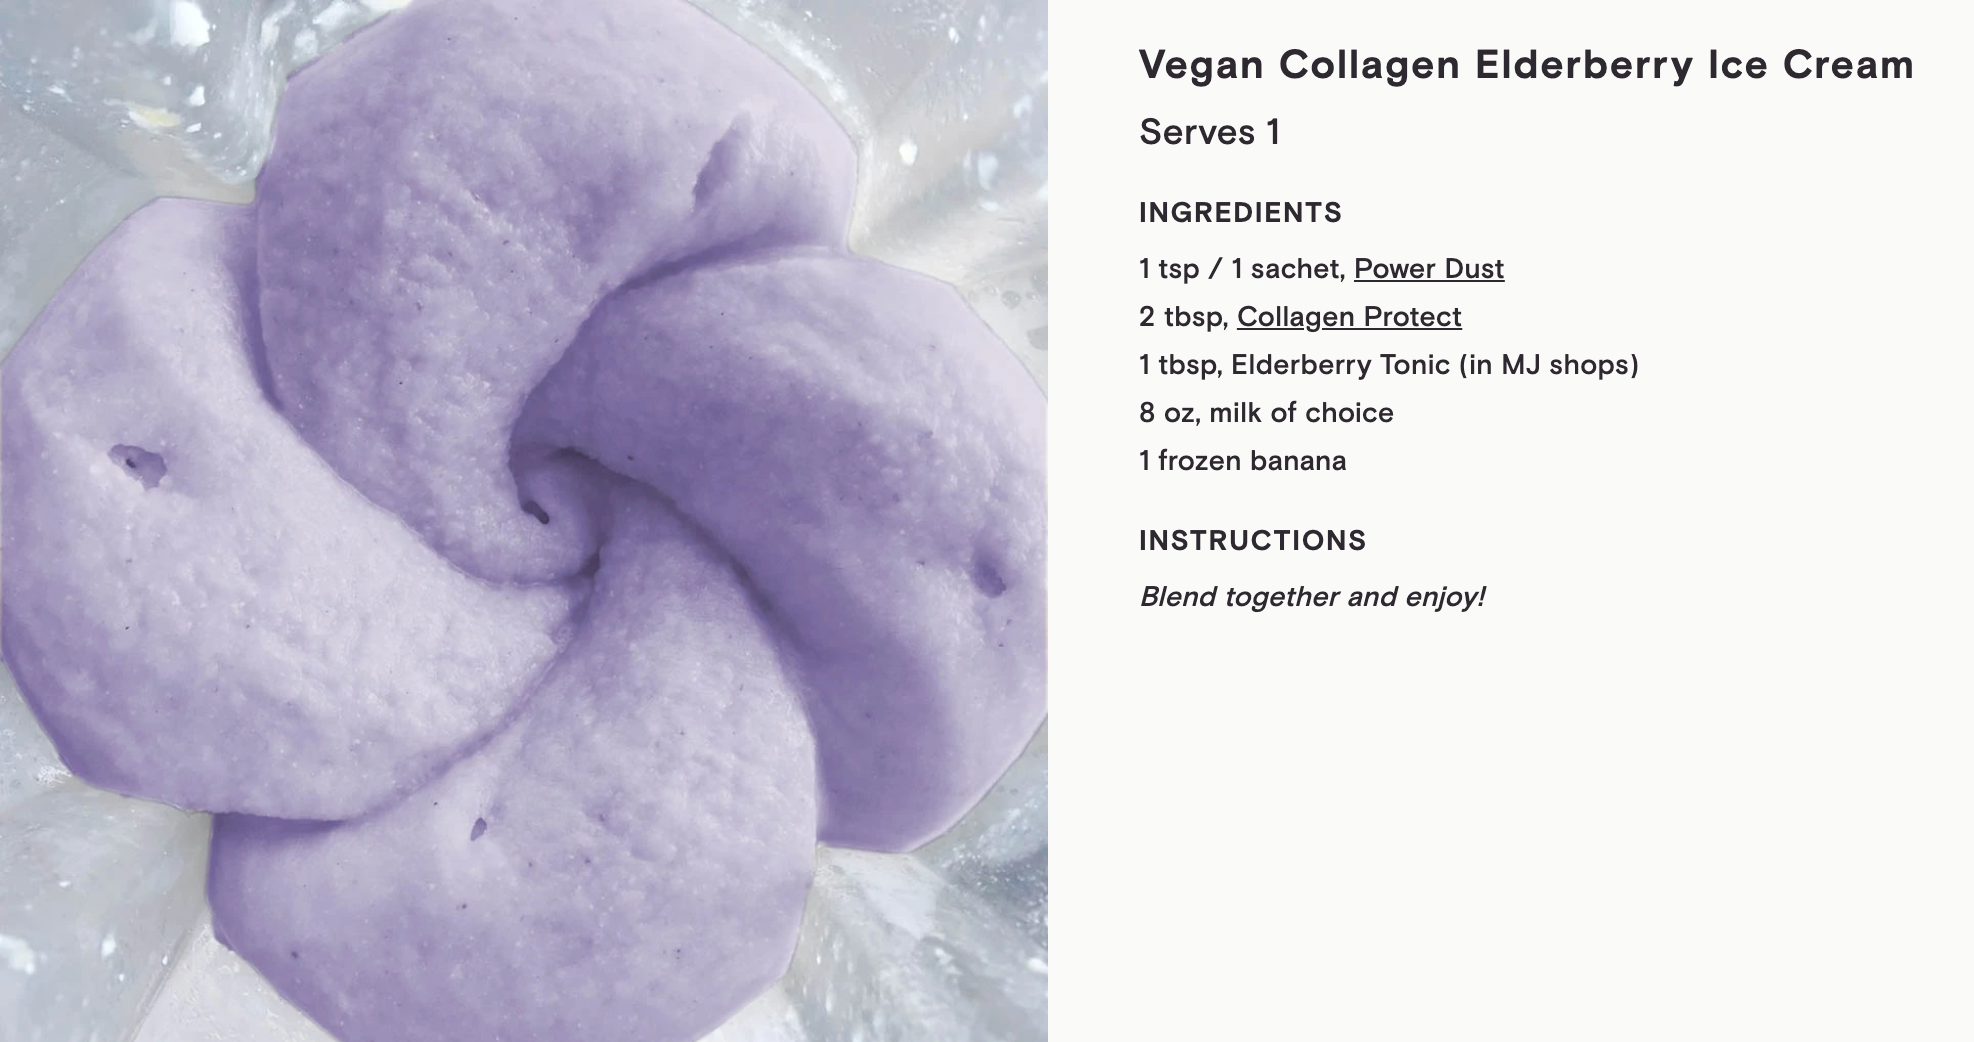 Moon Juice Power Dust Recipe | Vegan Collagen Elderberry Ice Cream